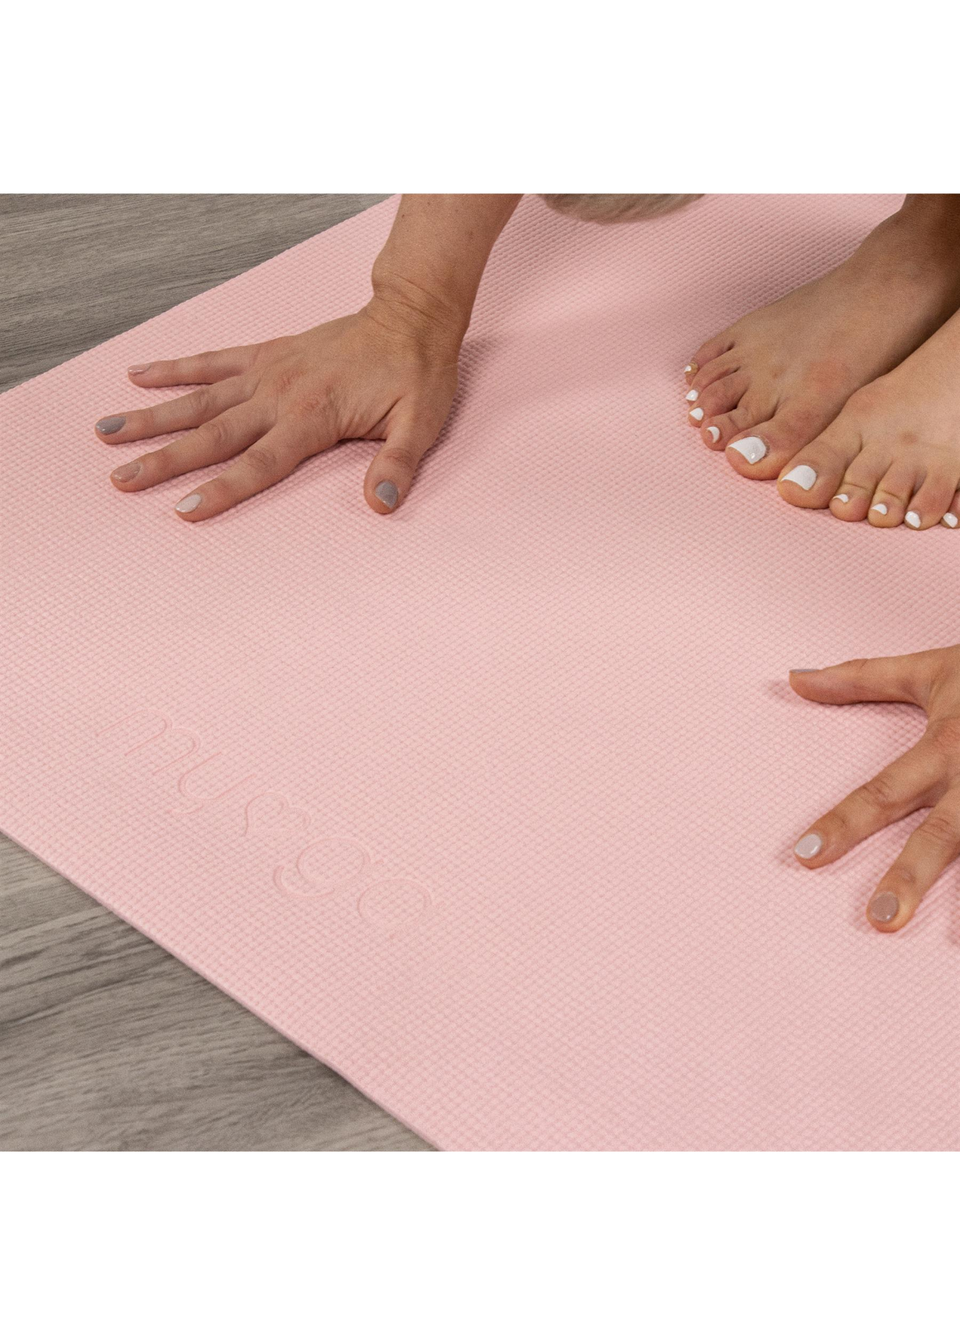 Myga Pink Yoga Mat - Matalan